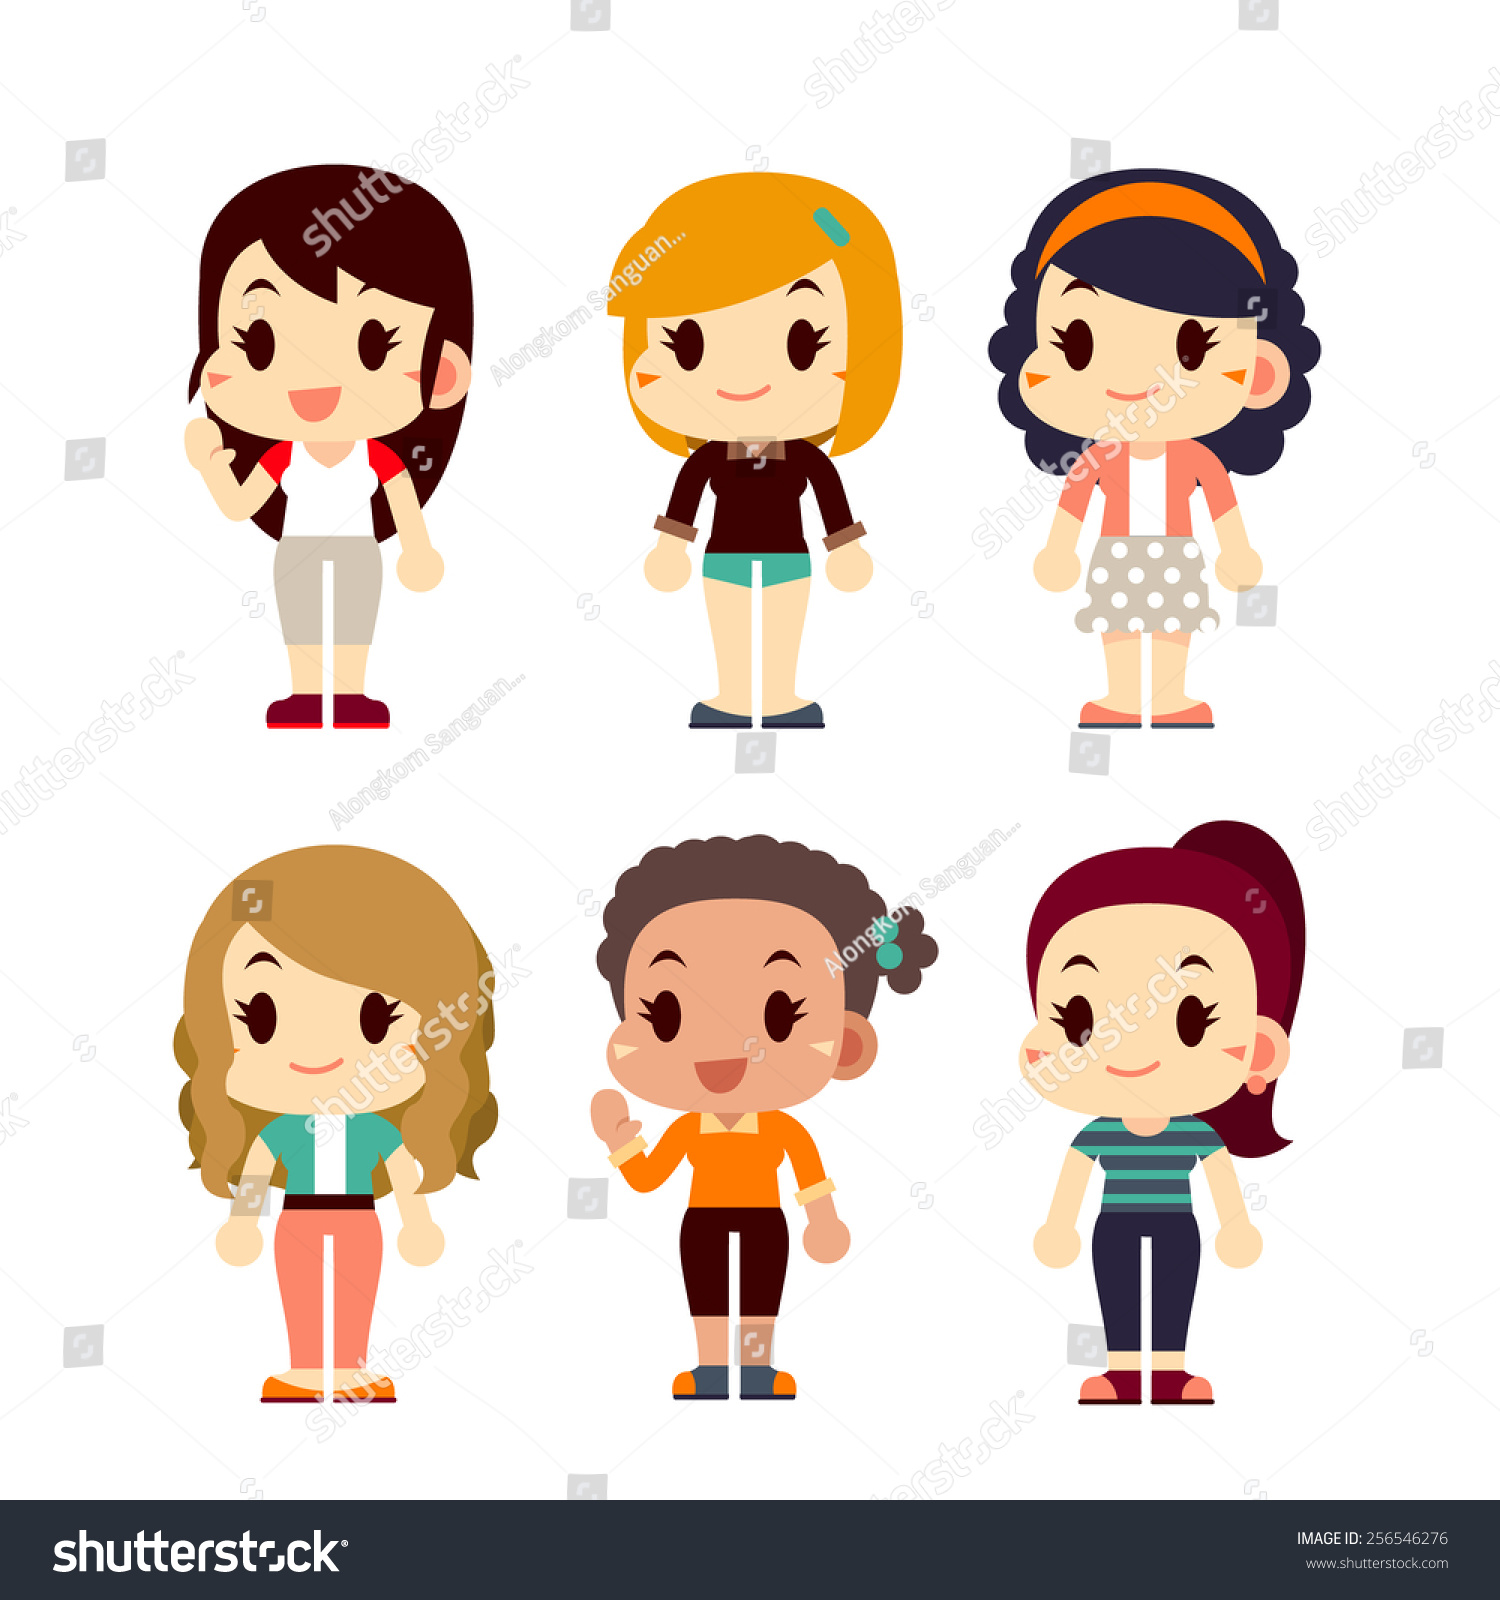 People Character Girls Set Stock Vector 256546276 - Shutterstock